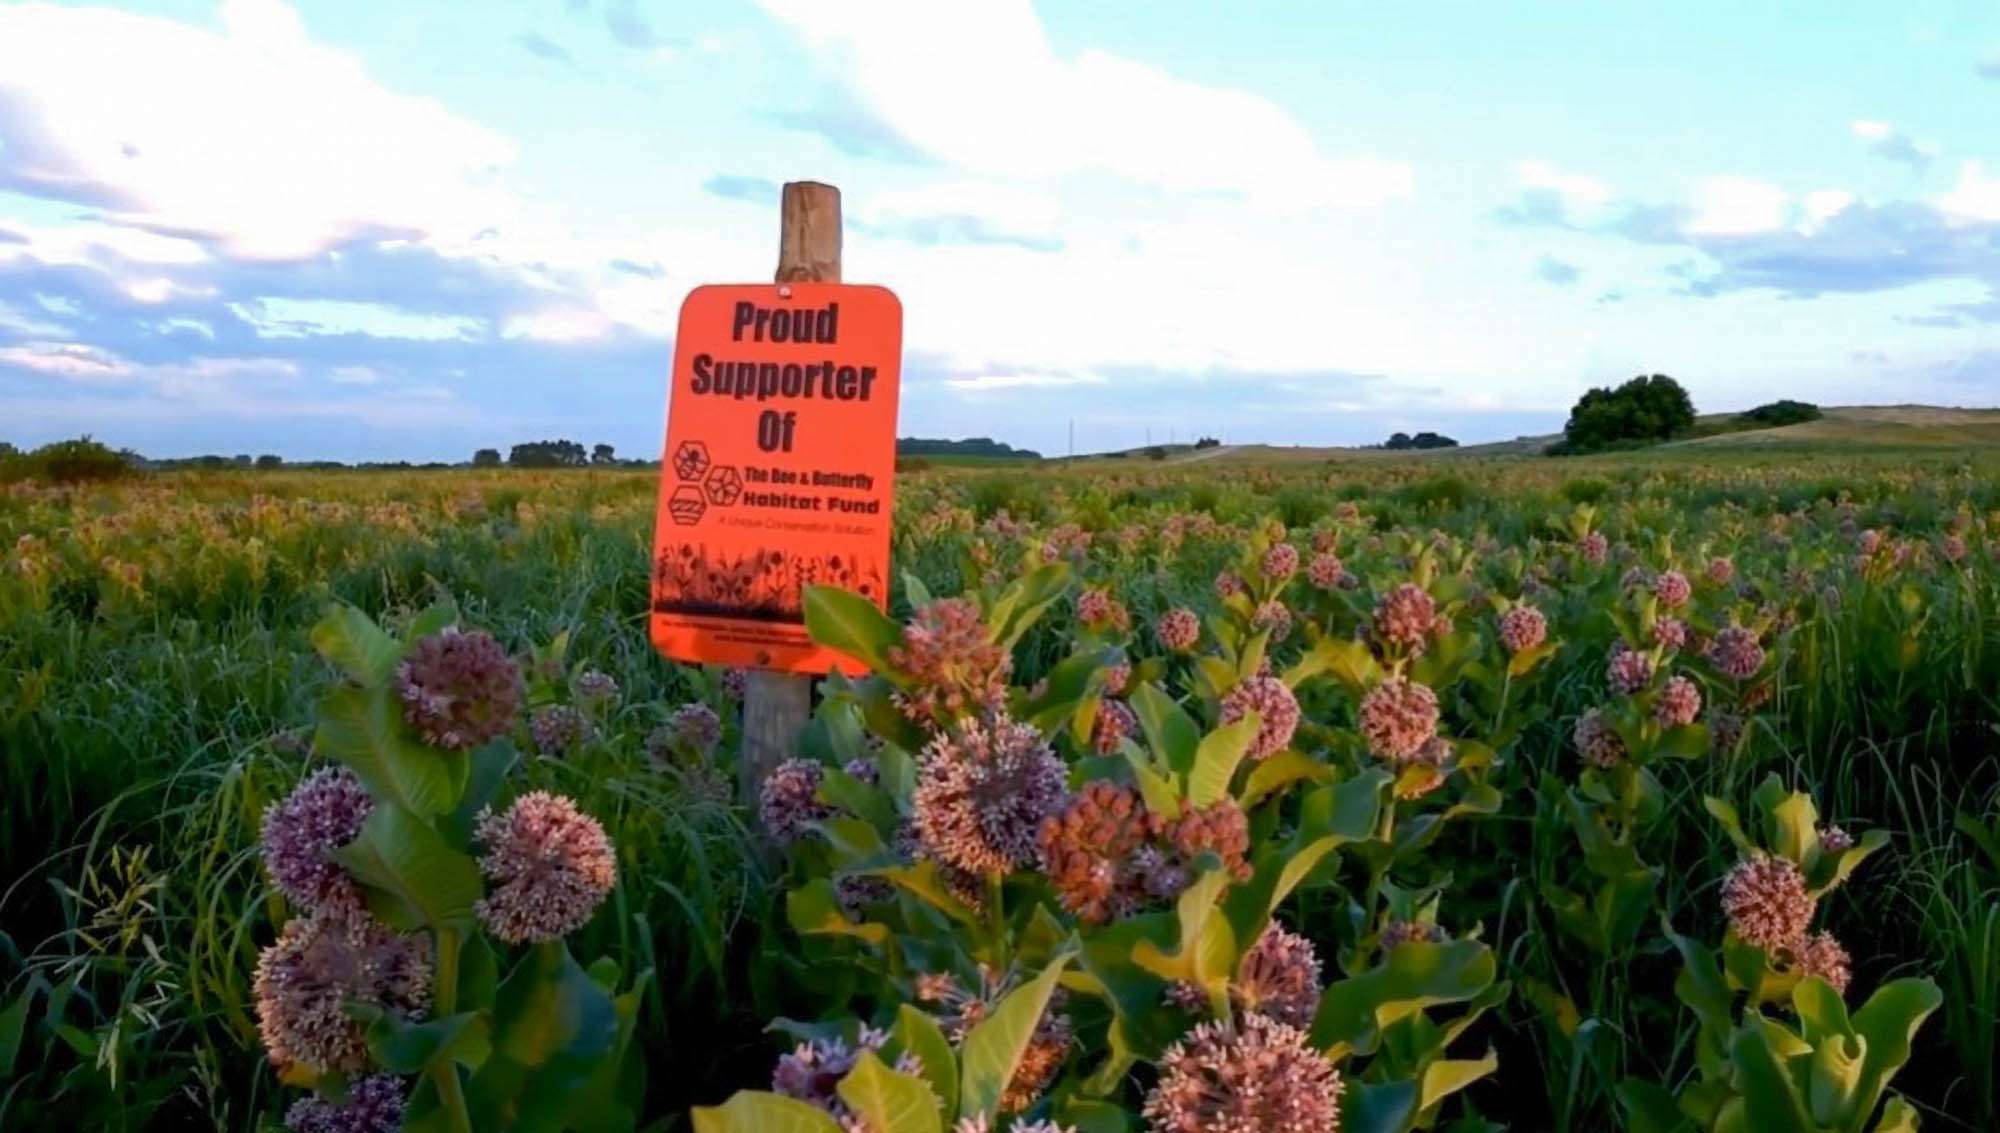 Pollinator Protection NGO Enters Pennsylvania